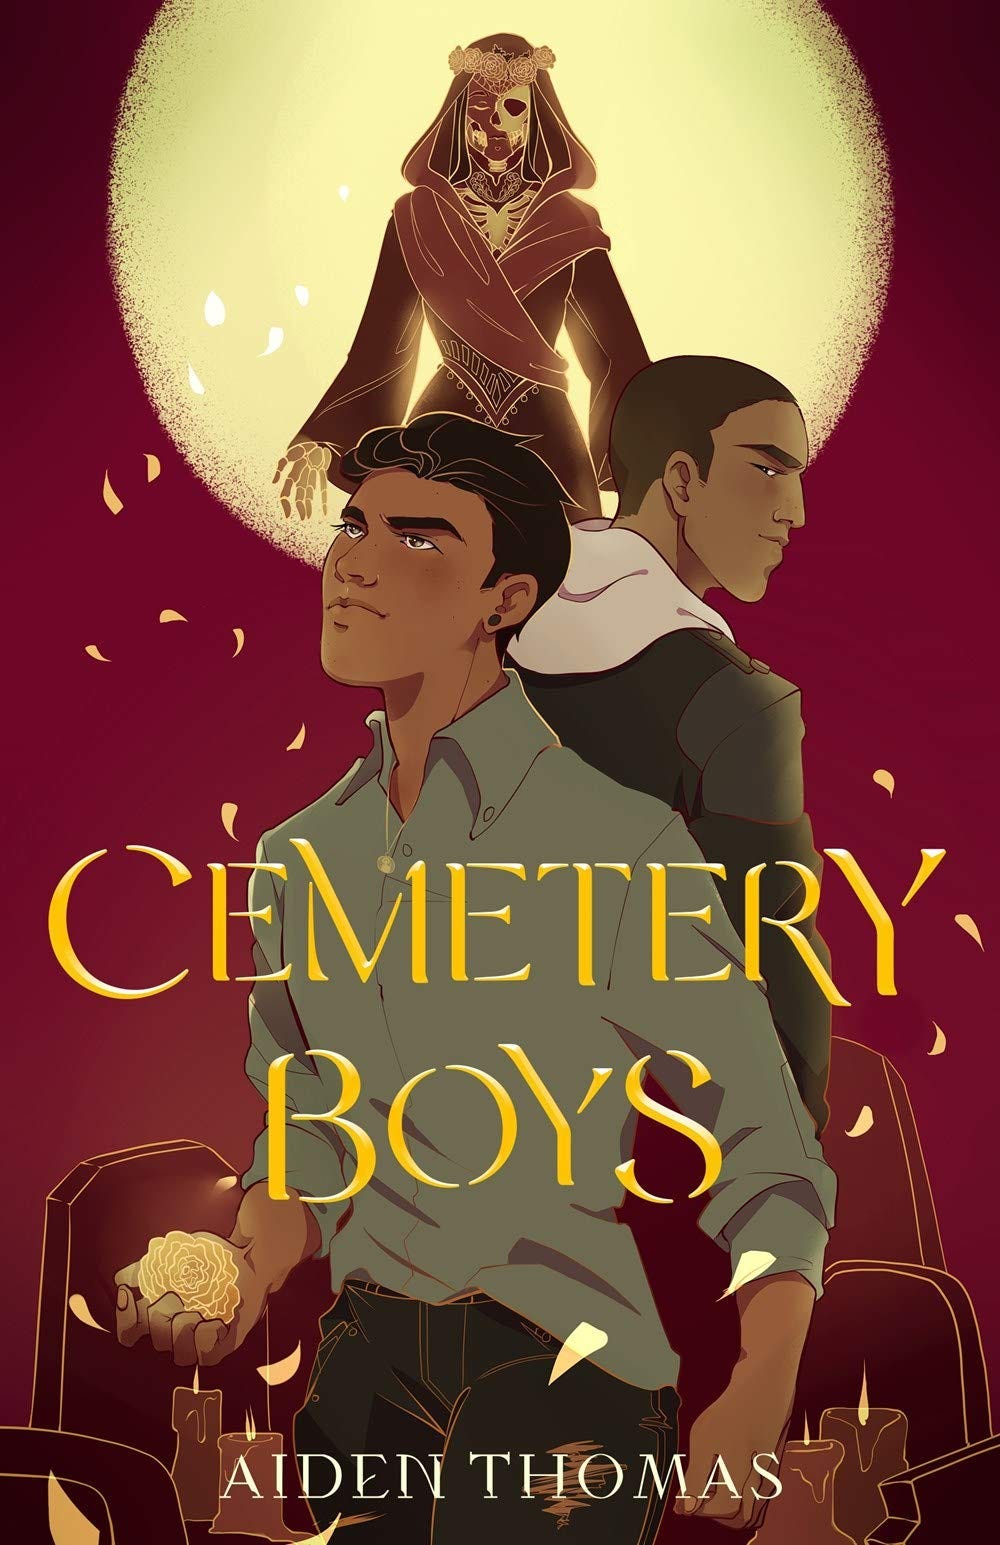 Amazon.com: Cemetery Boys: 9781250250469: Thomas, Aiden: Books